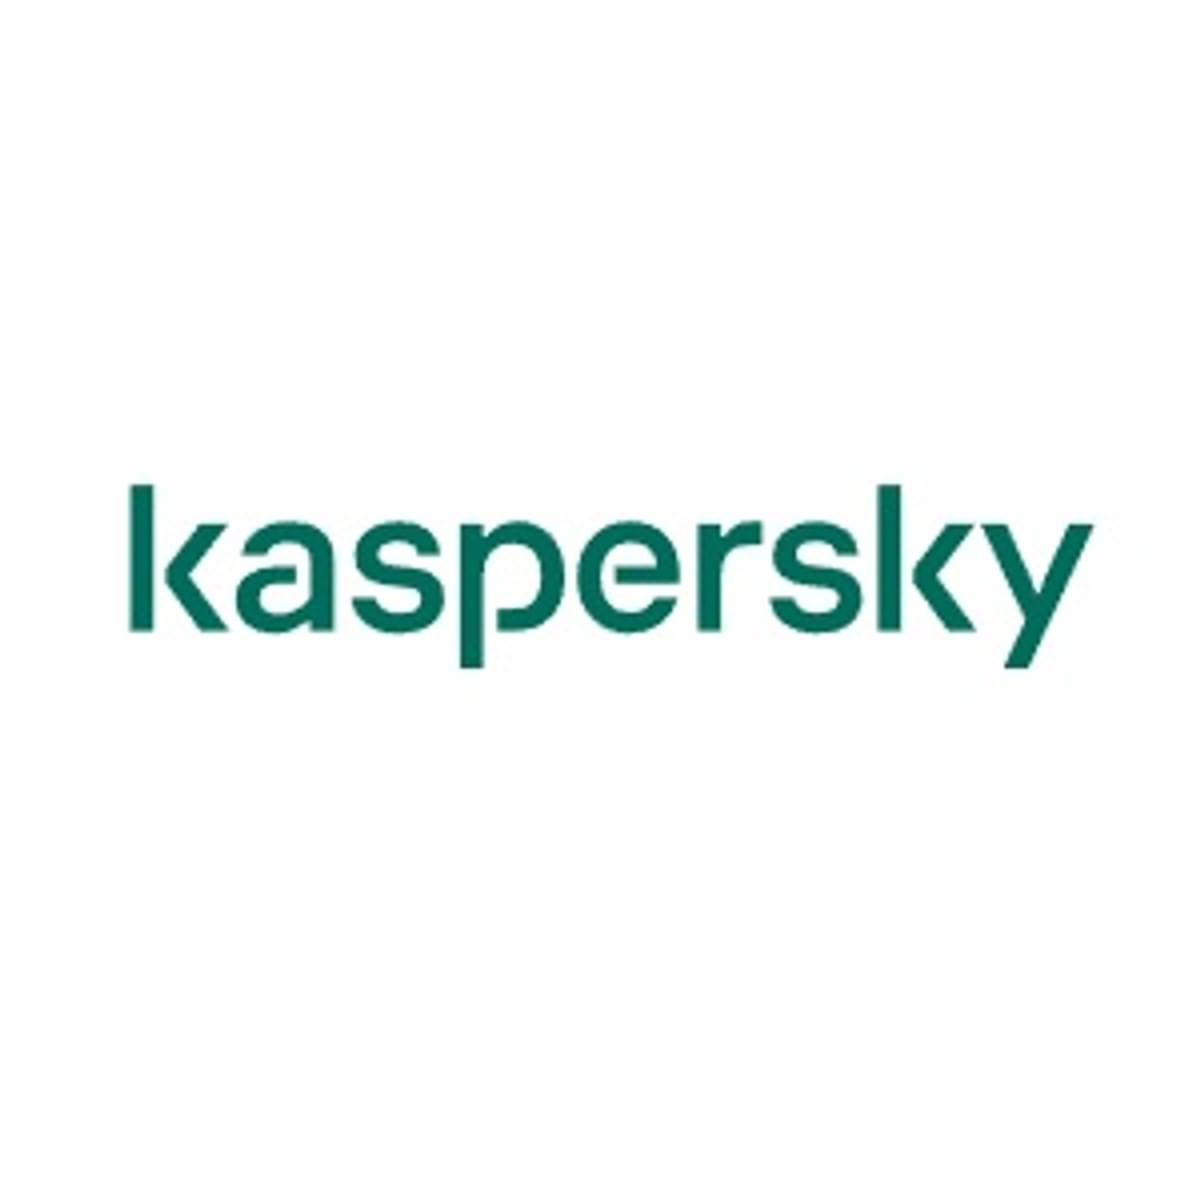 Volgens onderzoek Kaspersky 7% meer slachtoffers van financiële malware image